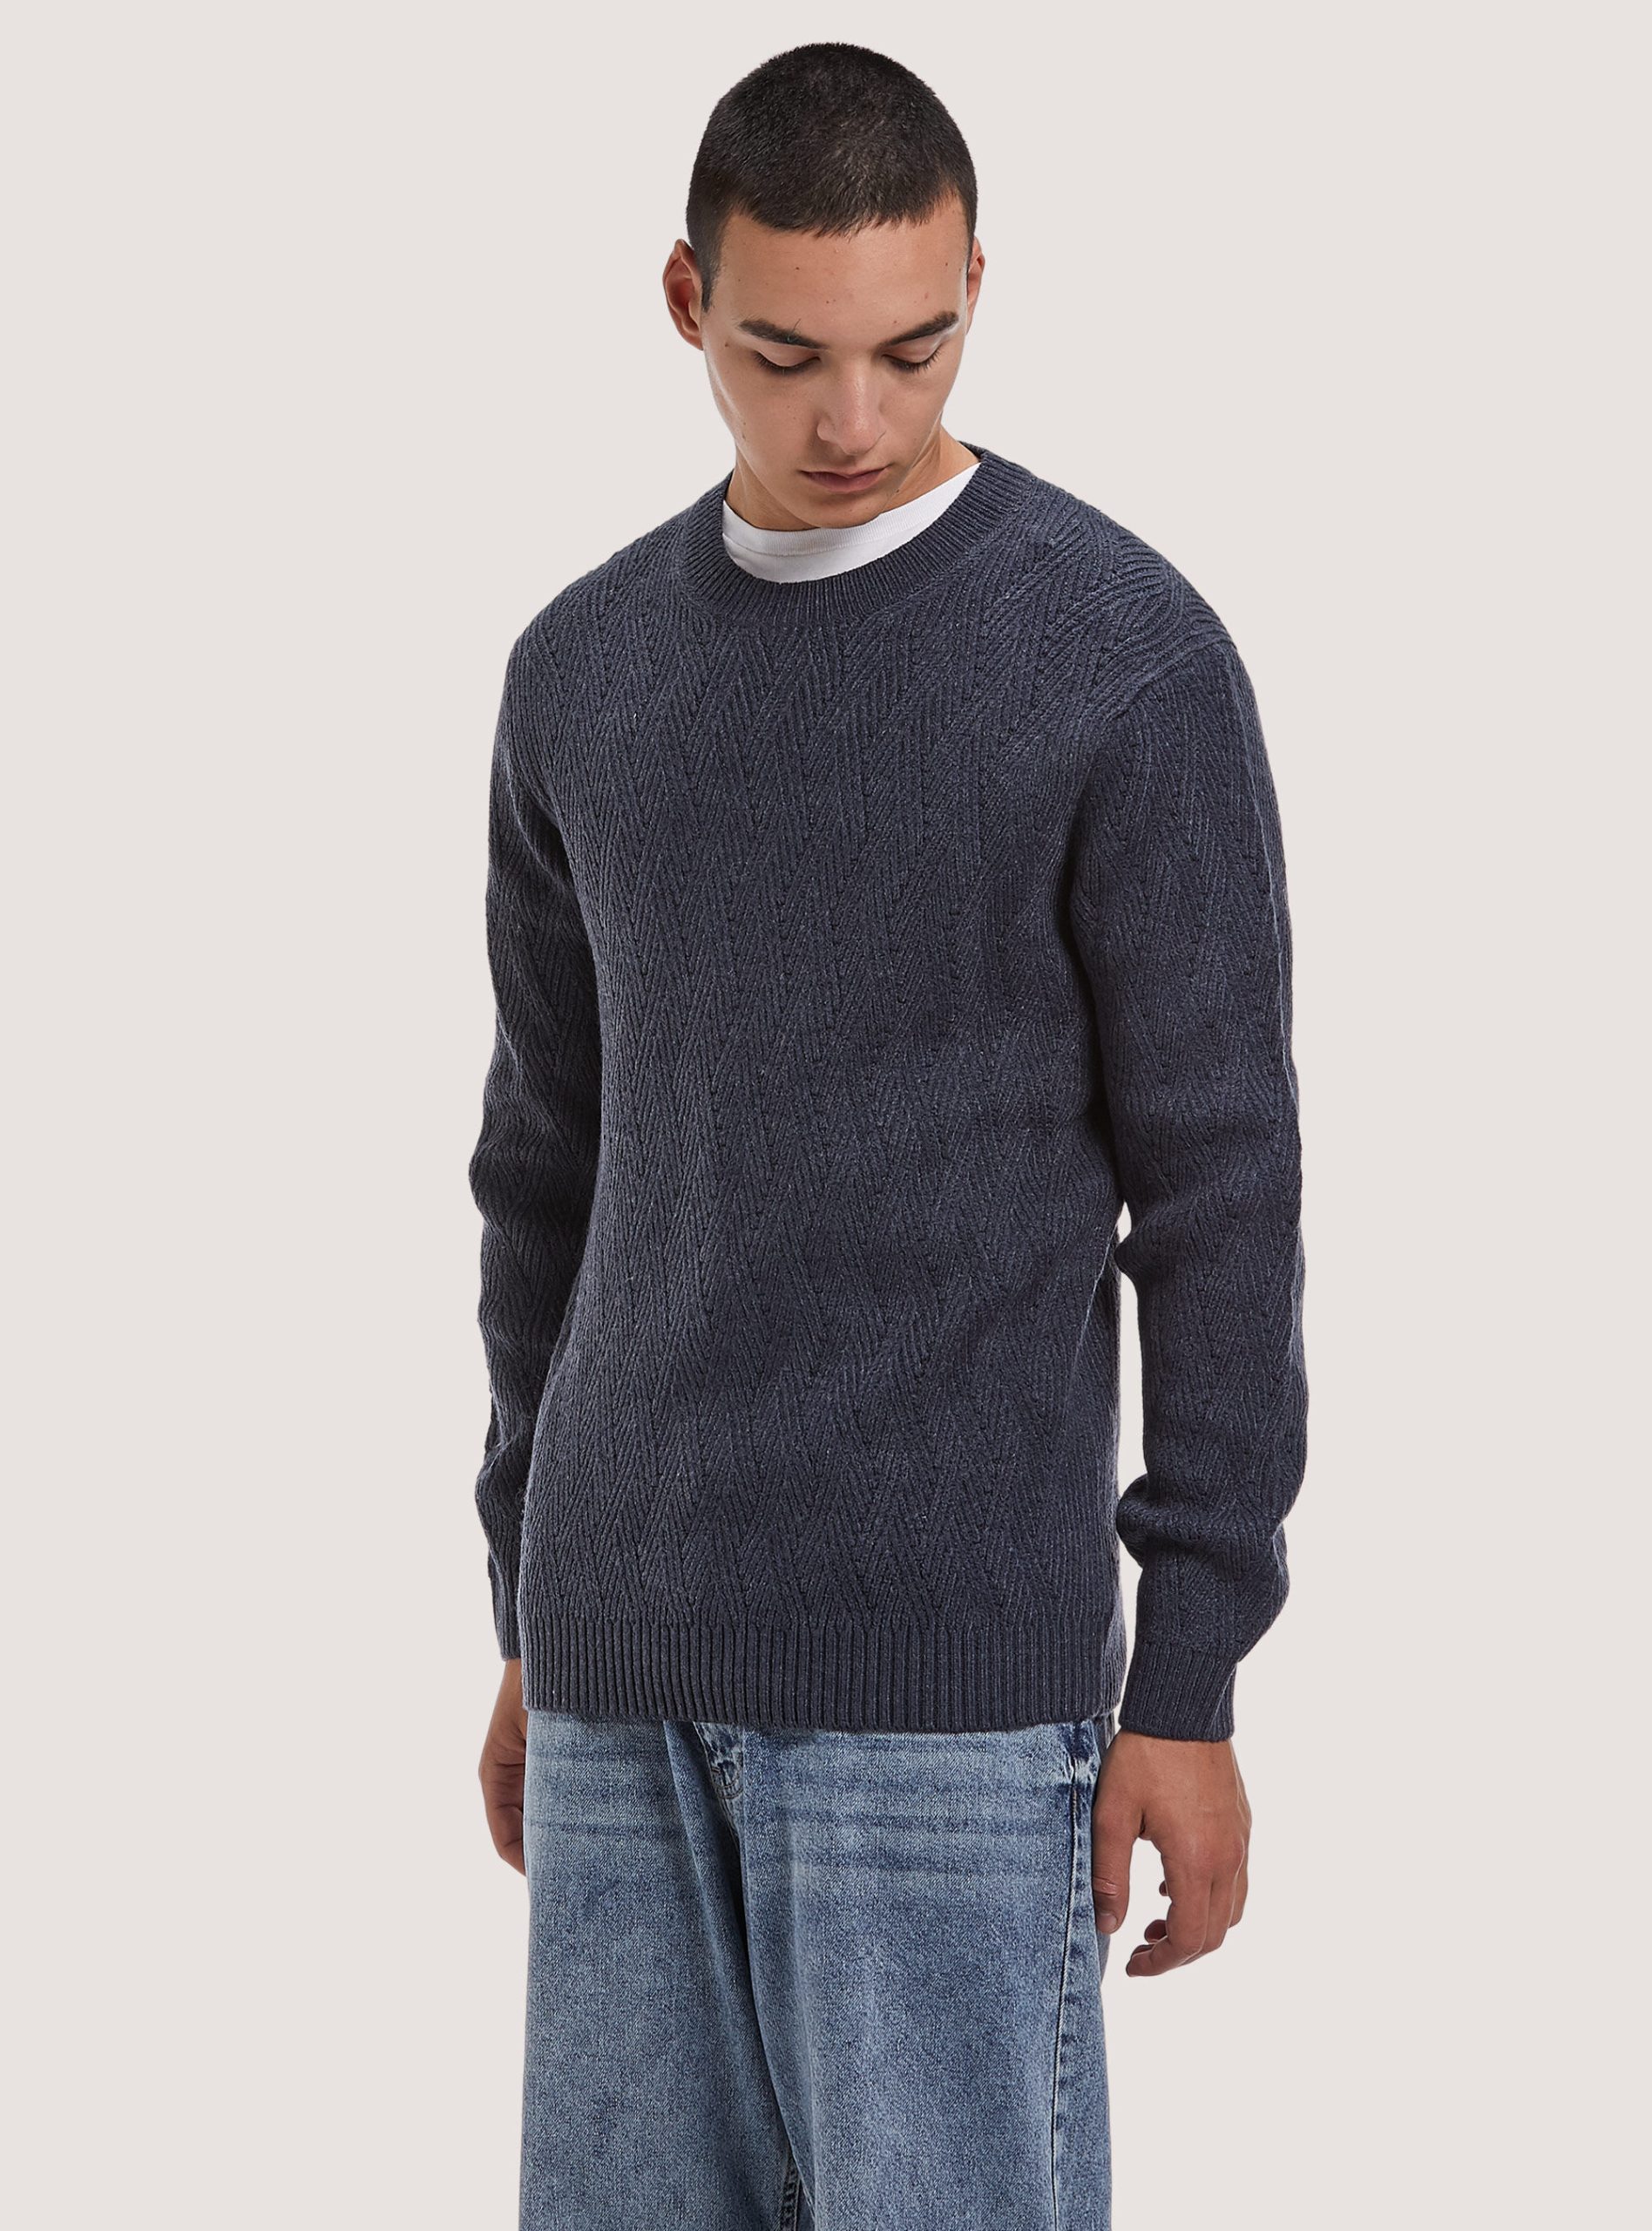 Strickwaren Soft Pullover With Geometric Texture Stilvoll Mna2 Navy Mel Med Männer Alcott – 1